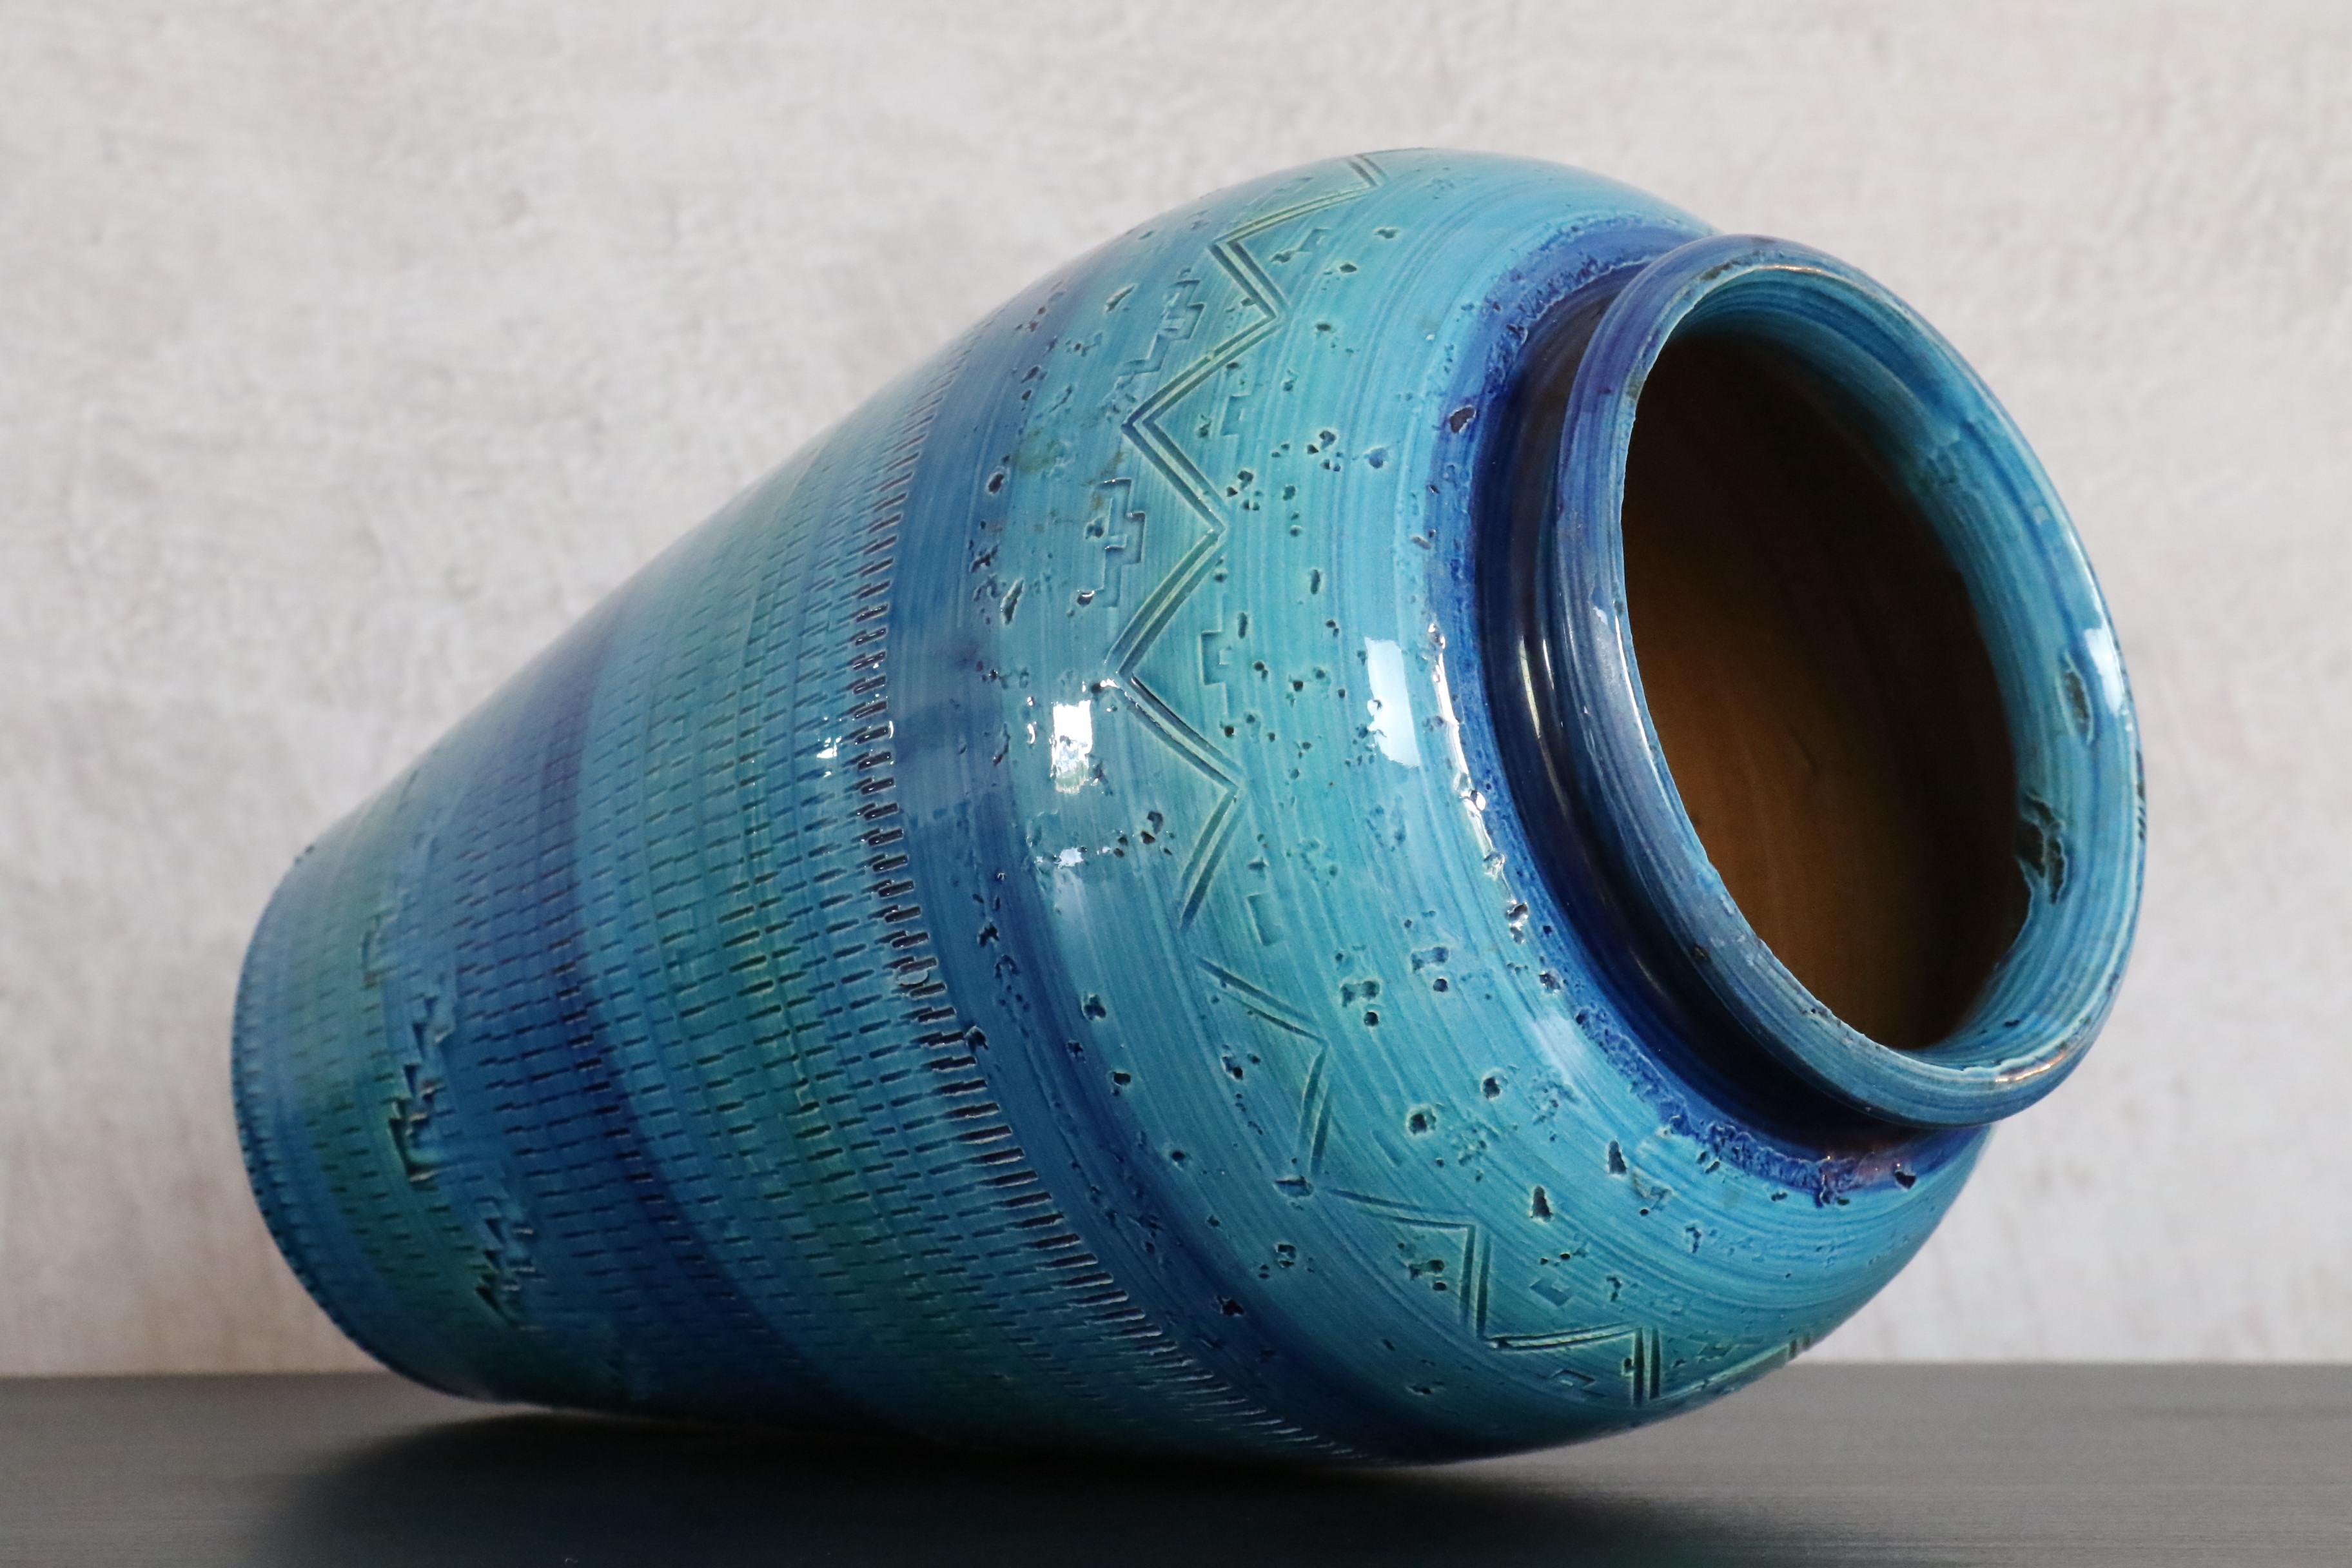 Große Vase aus Terrakotta-Keramik Rimini Blue von Aldo Londi für Bitossi, Italien. 

Diese große Vase wurde in den 1960er Jahren von Aldo Londi in Italien entworfen.
Blaue, blassgrüne und türkisfarbene Terrakotta-Keramik wird von Hand glasiert und